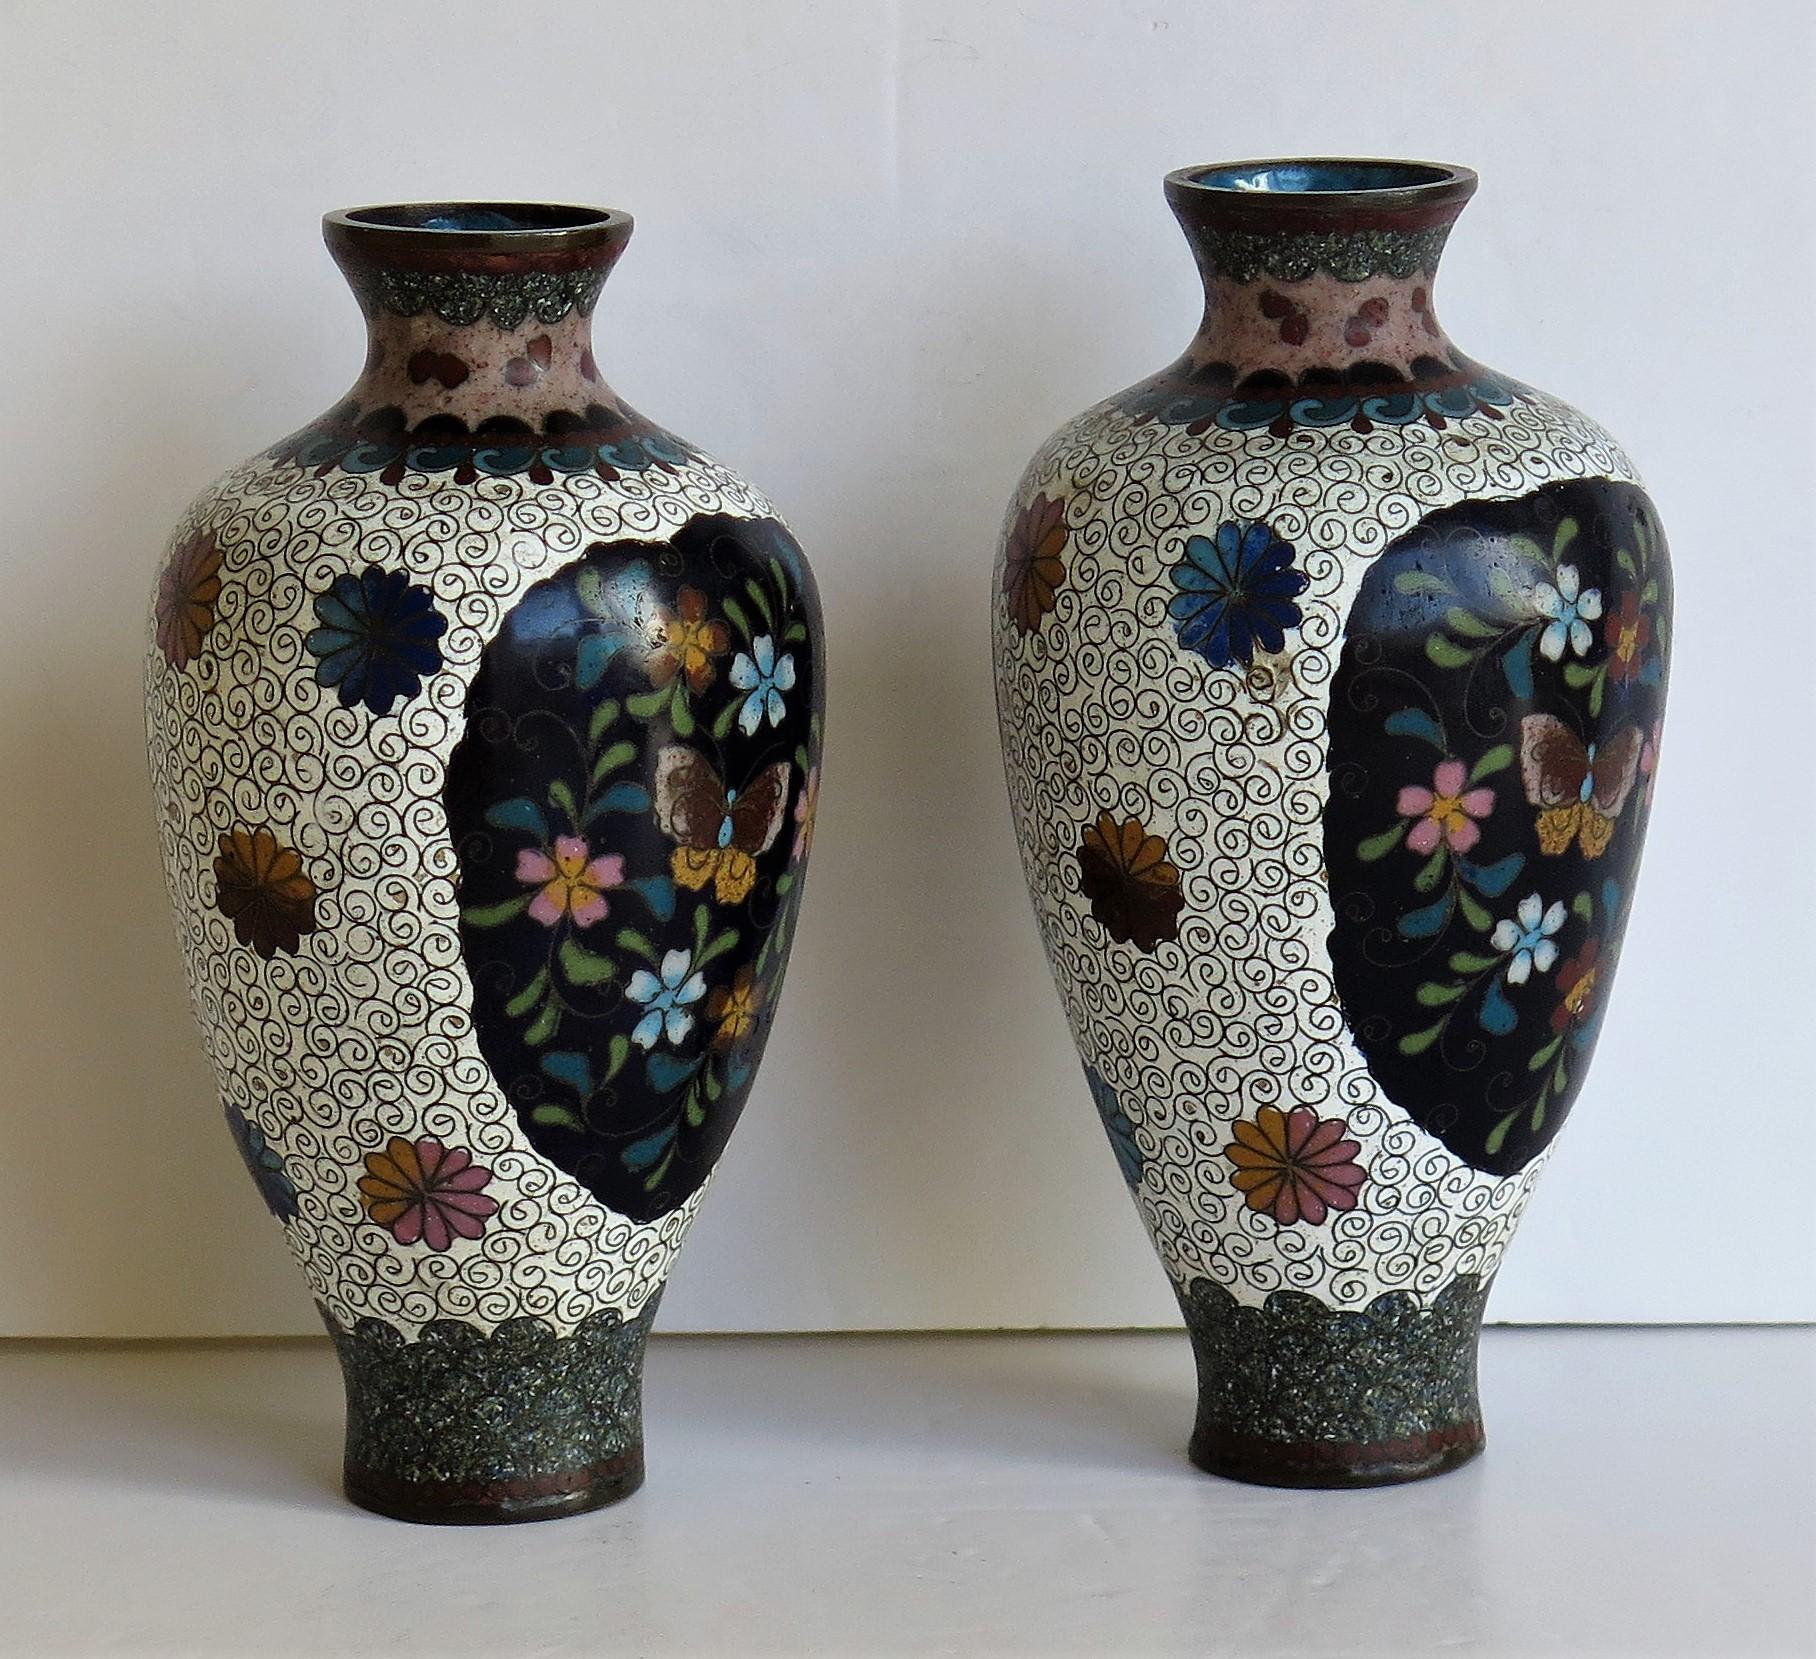 Japanese Cloisonné Vases Butterflies & Flowers, 19th Century Meiji Period, Pair For Sale 2